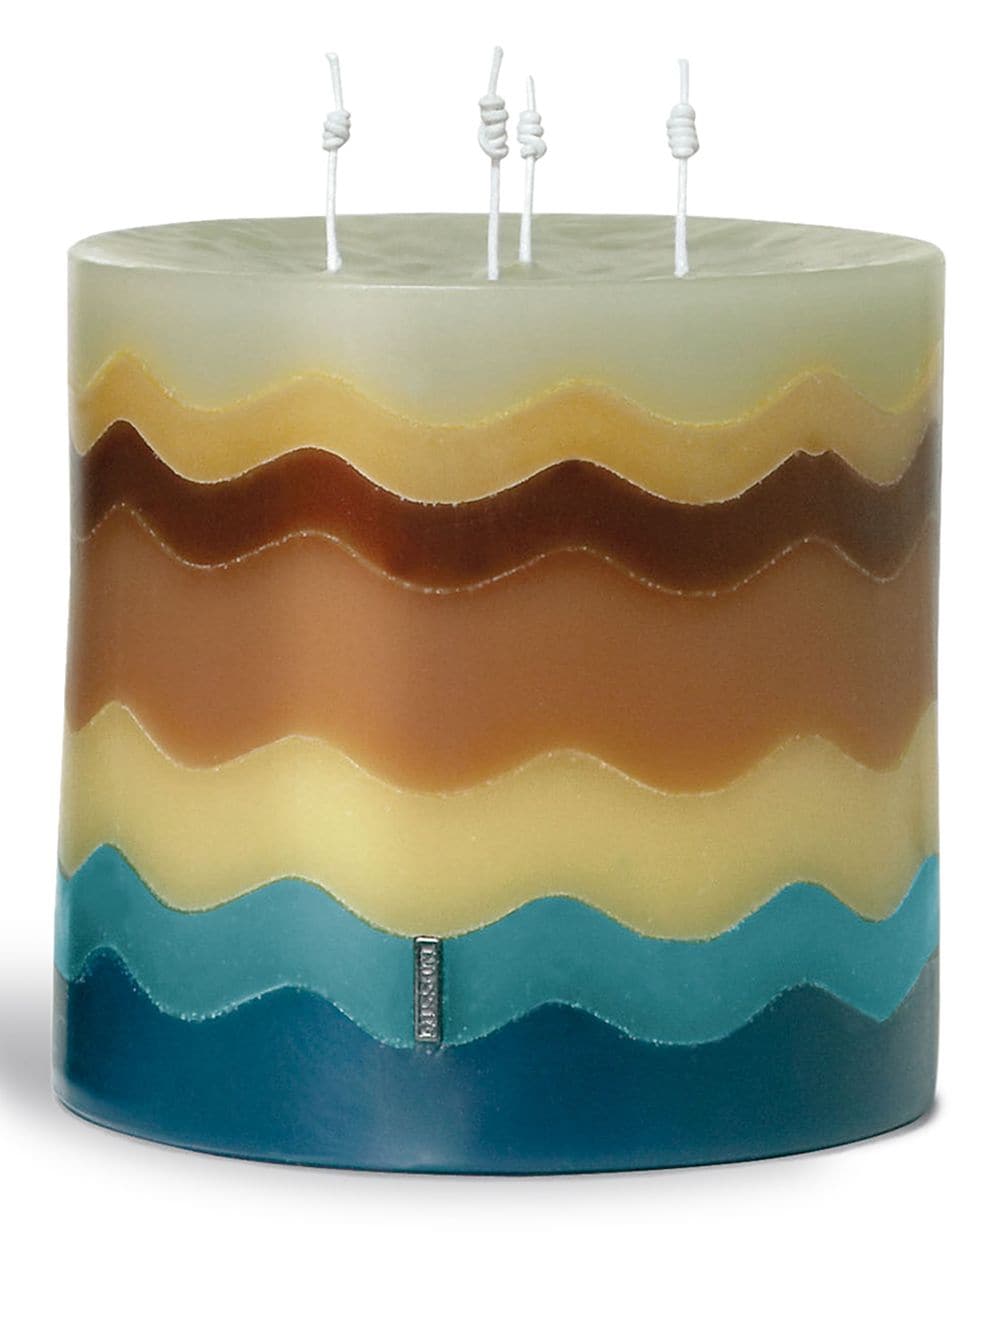 Missoni Home Torta wave candle (700g) - Neutrals von Missoni Home